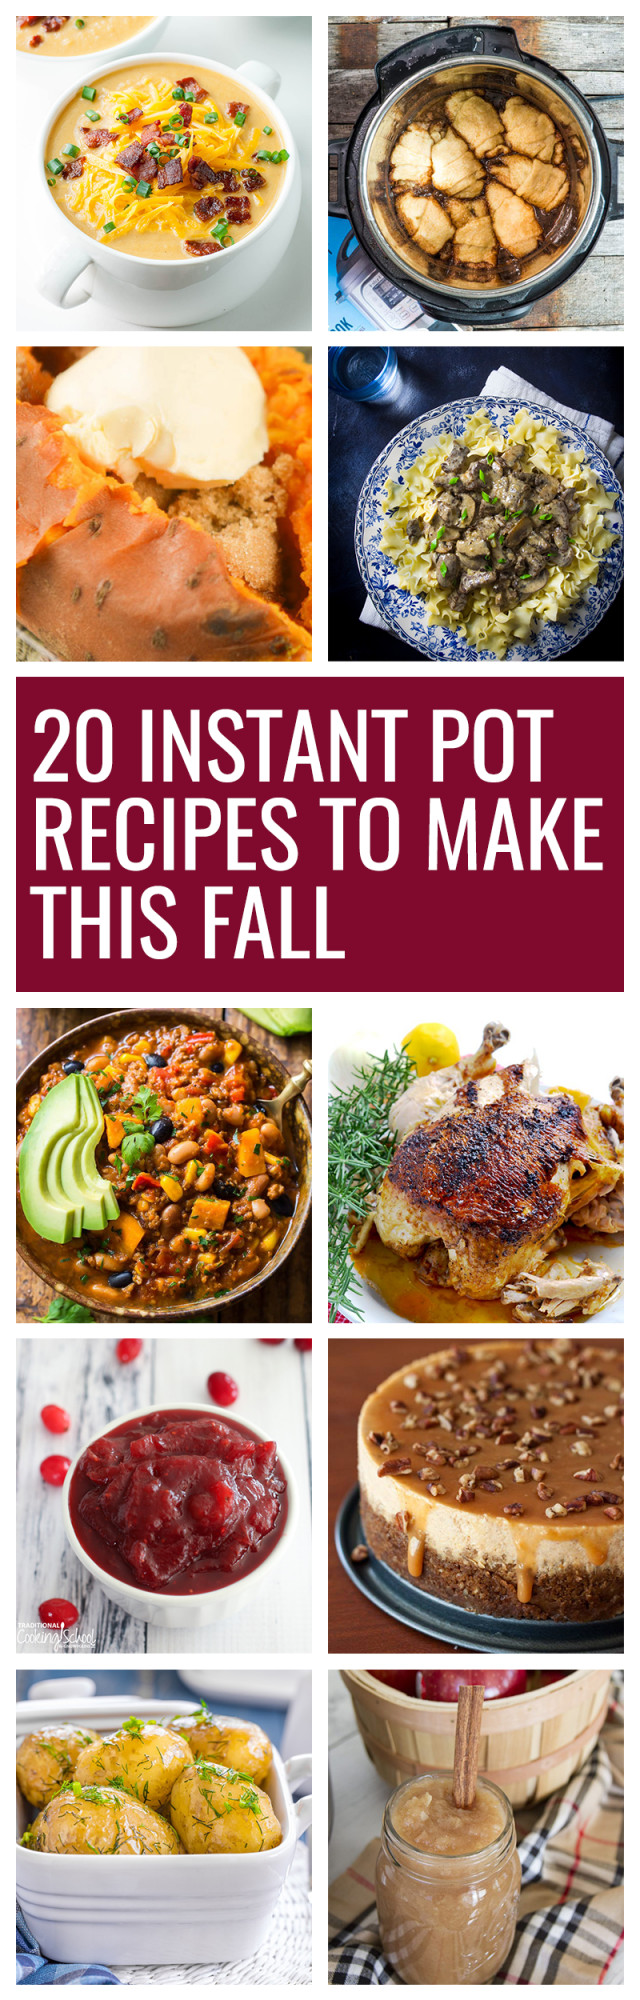 Fall Instant Pot Recipes
 20 Fall Instant Pot Recipes